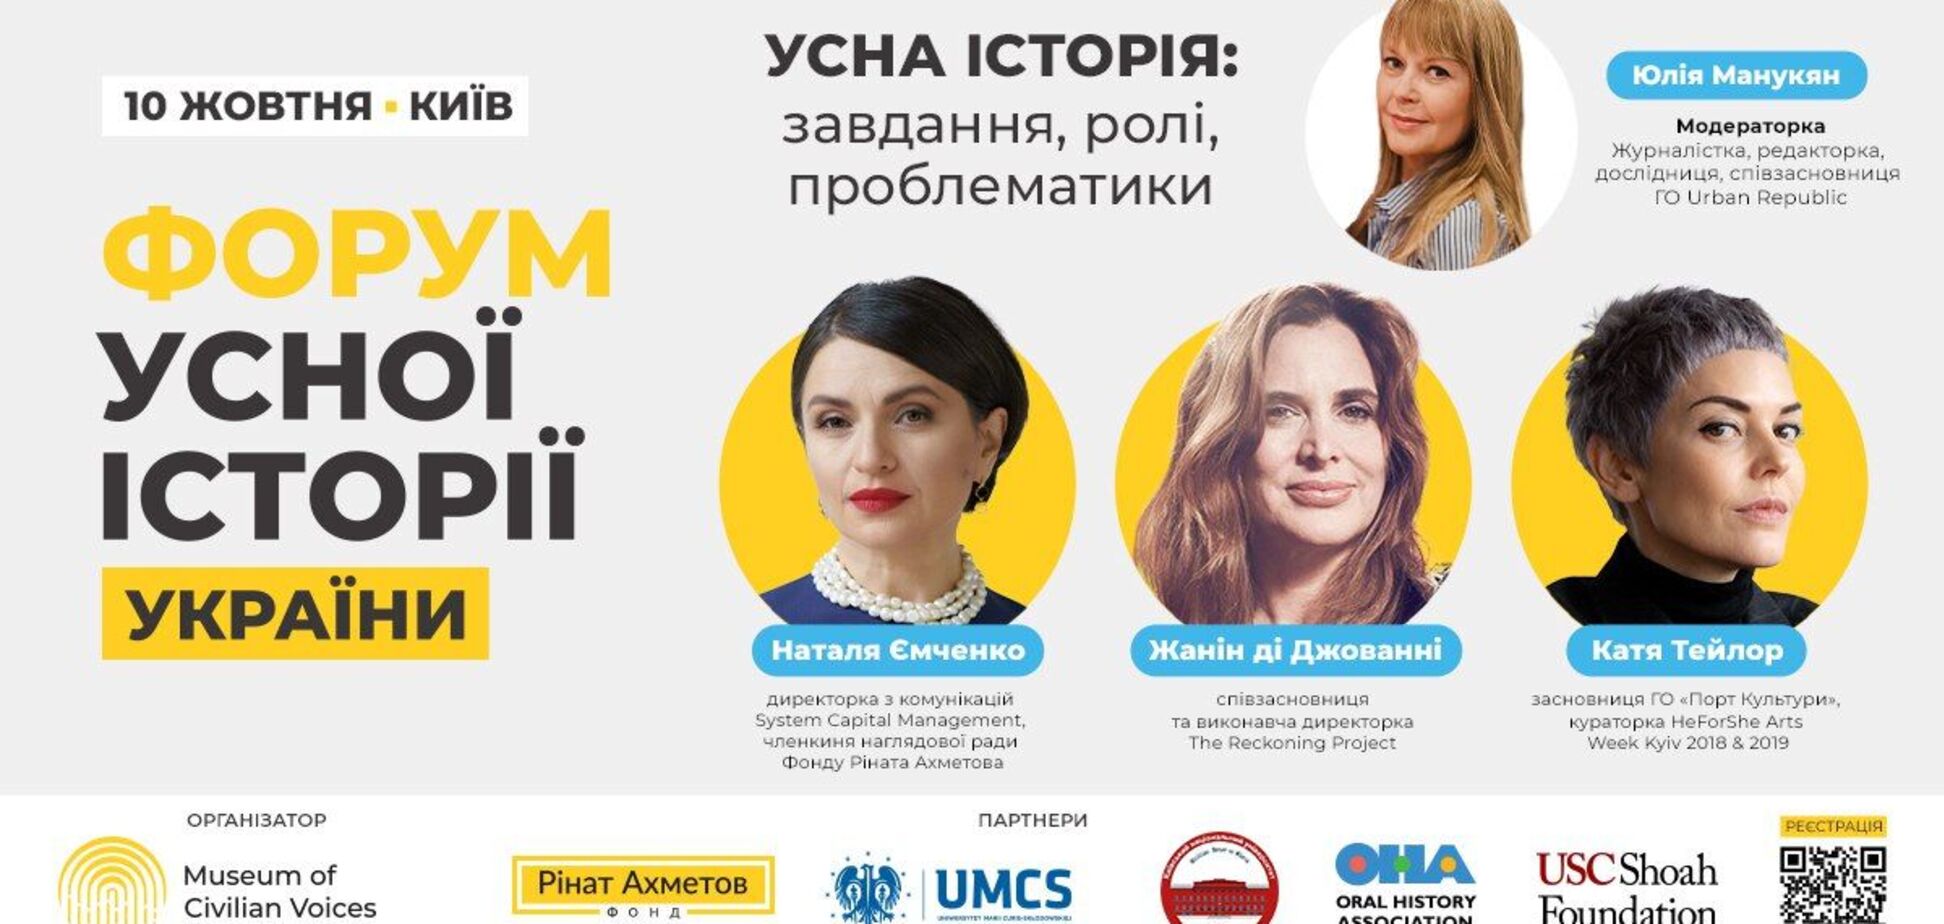 'Форум устной истории Украины': объявлены спикеры дискуссионной панели 'Устная история: задачи, роли, проблематики'